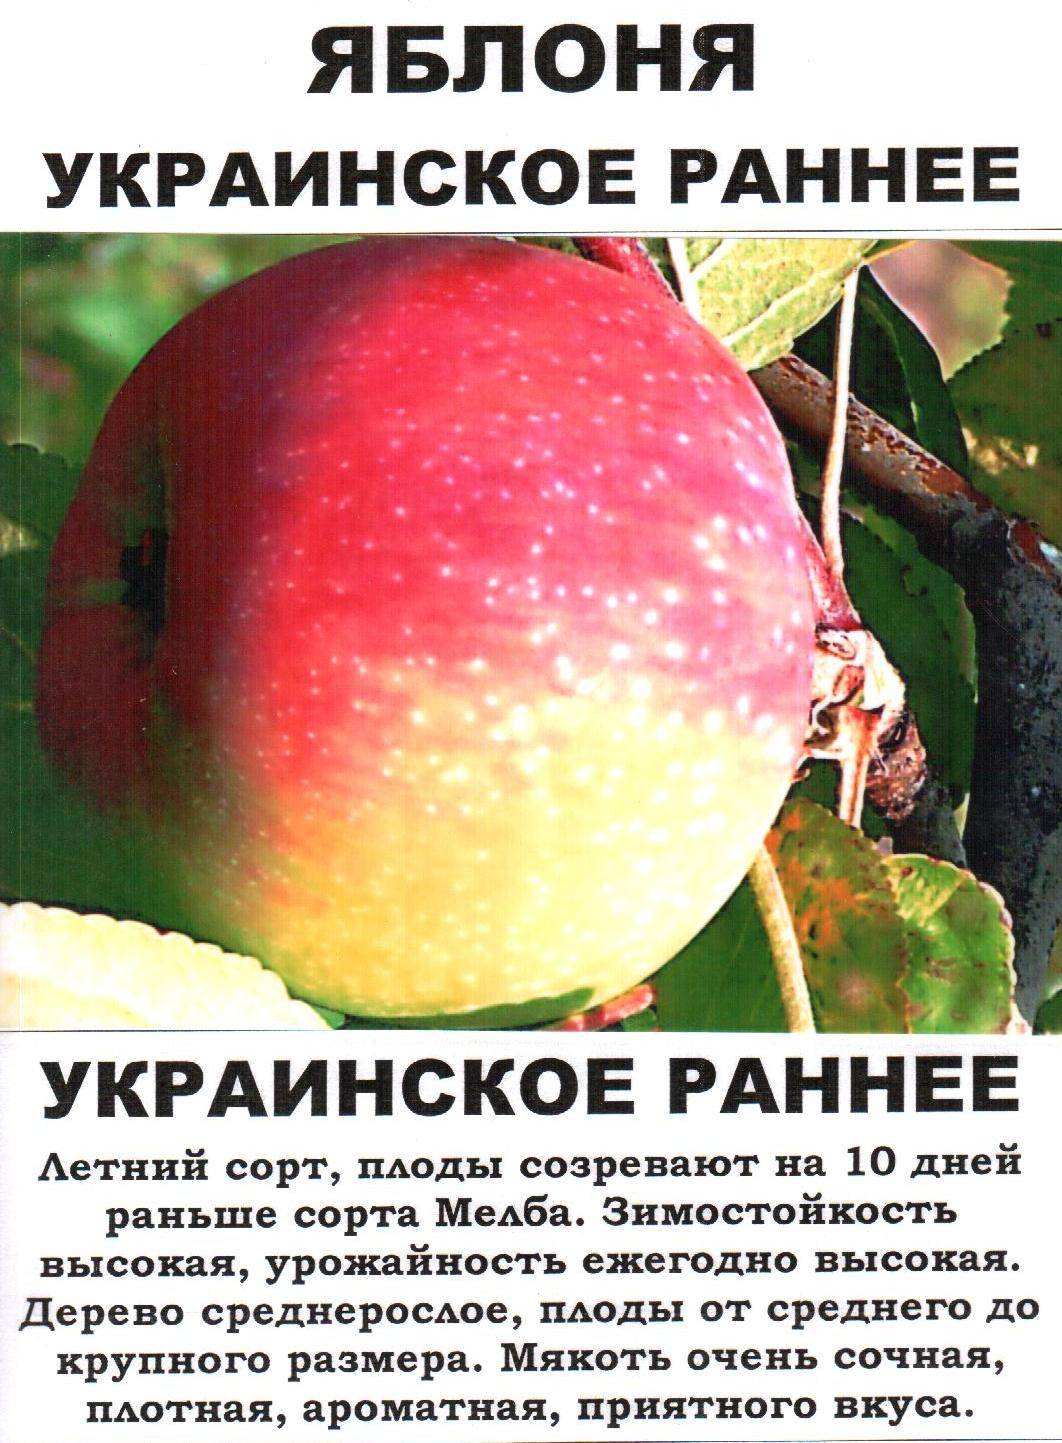 Яблоня красное раннее описание сорта фото отзывы. Яблоня украинская ранняя. Описание сортов яблок. Сорт яблони украинское раннее. Ранние сорта яблок.